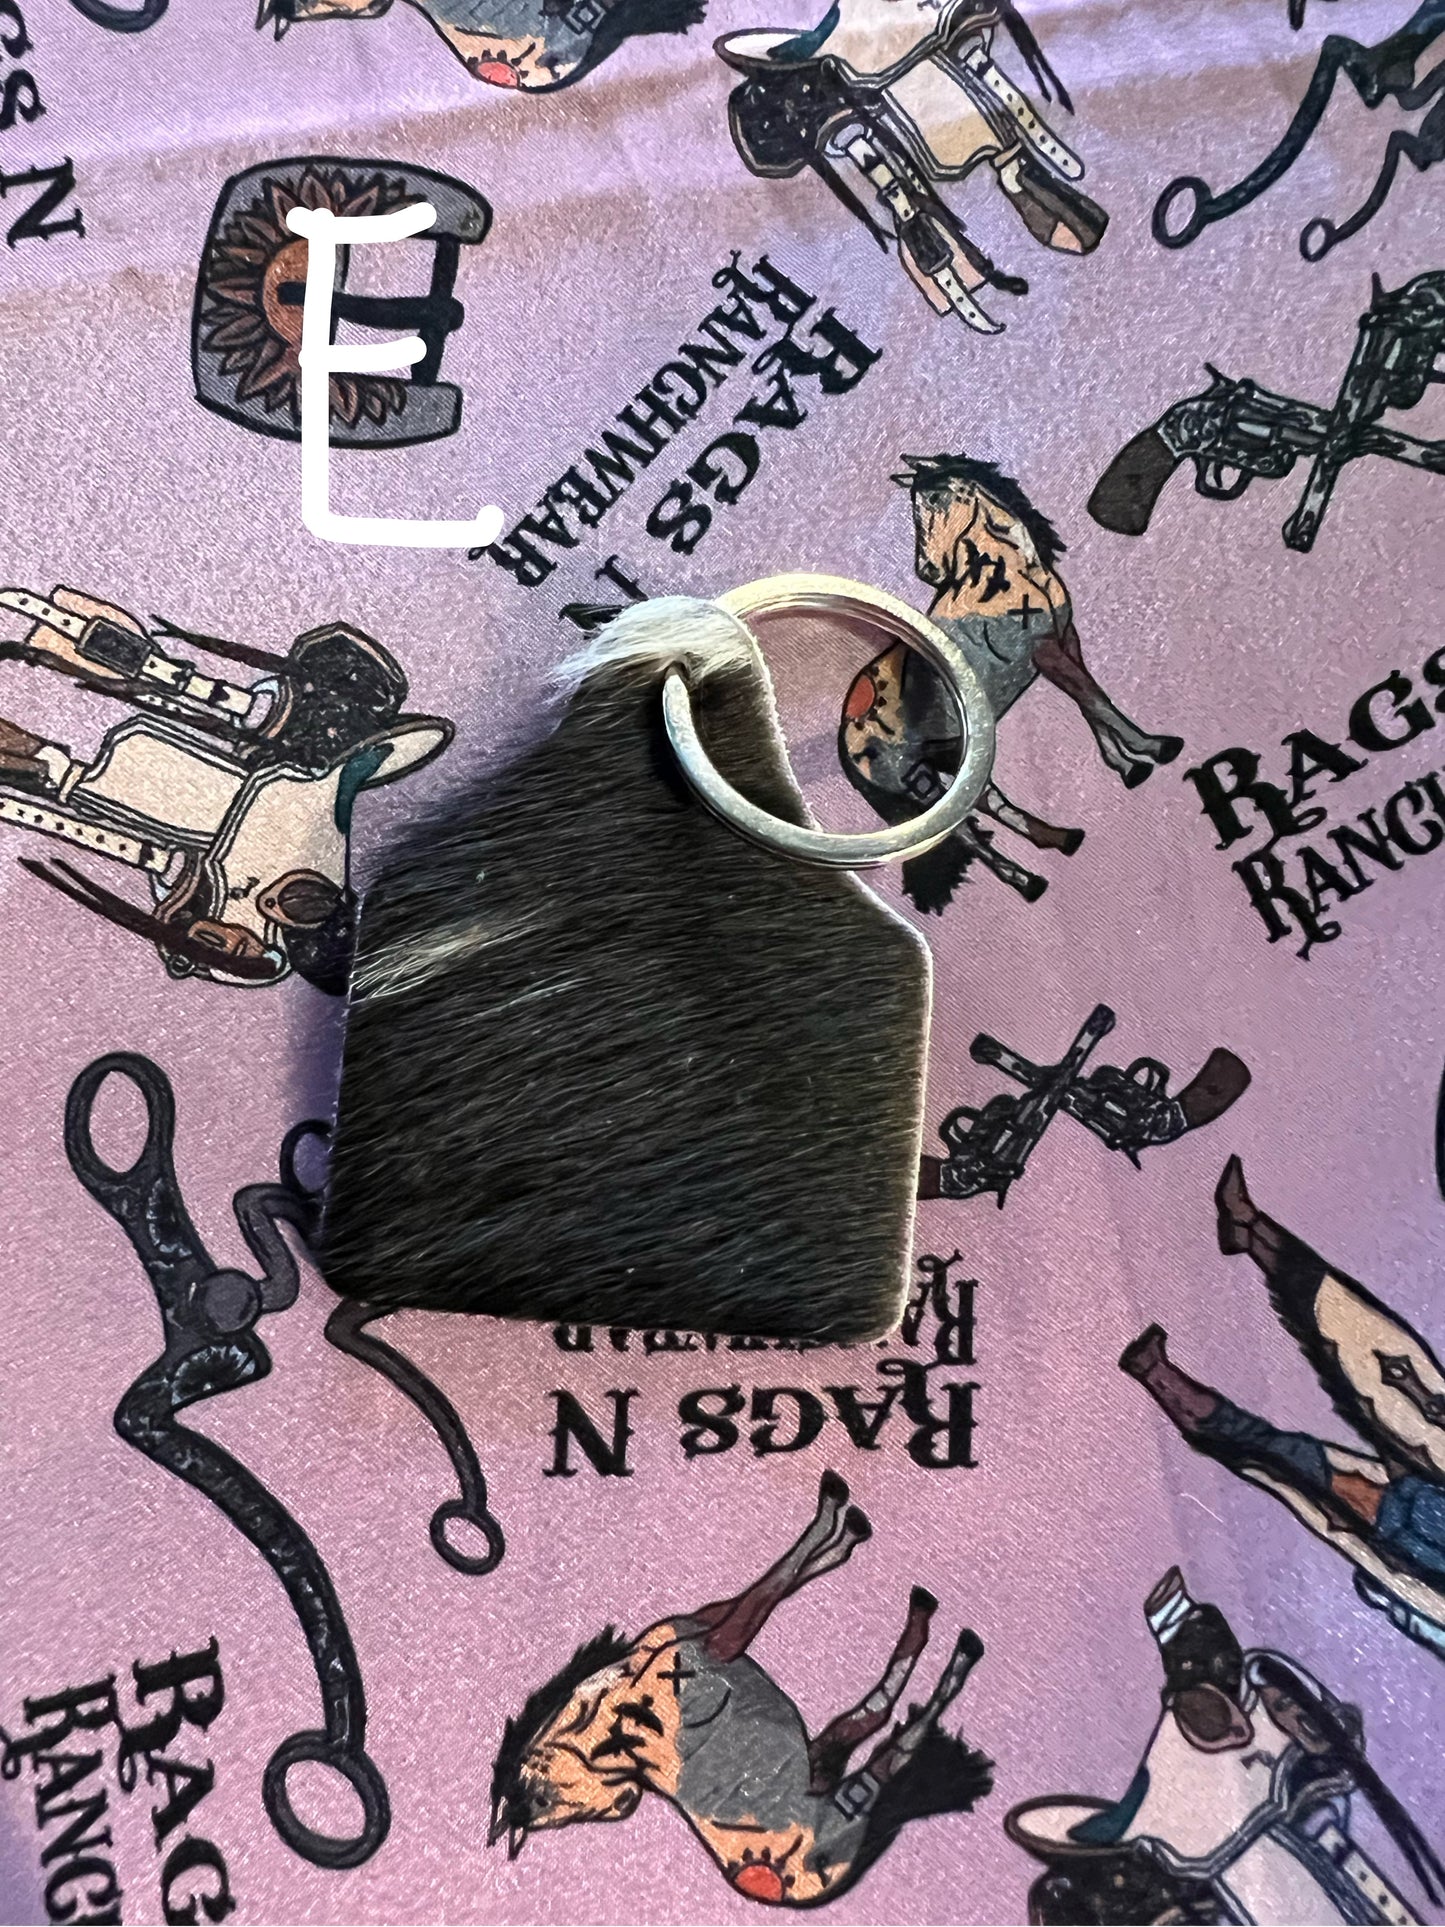 Cow tag keychain